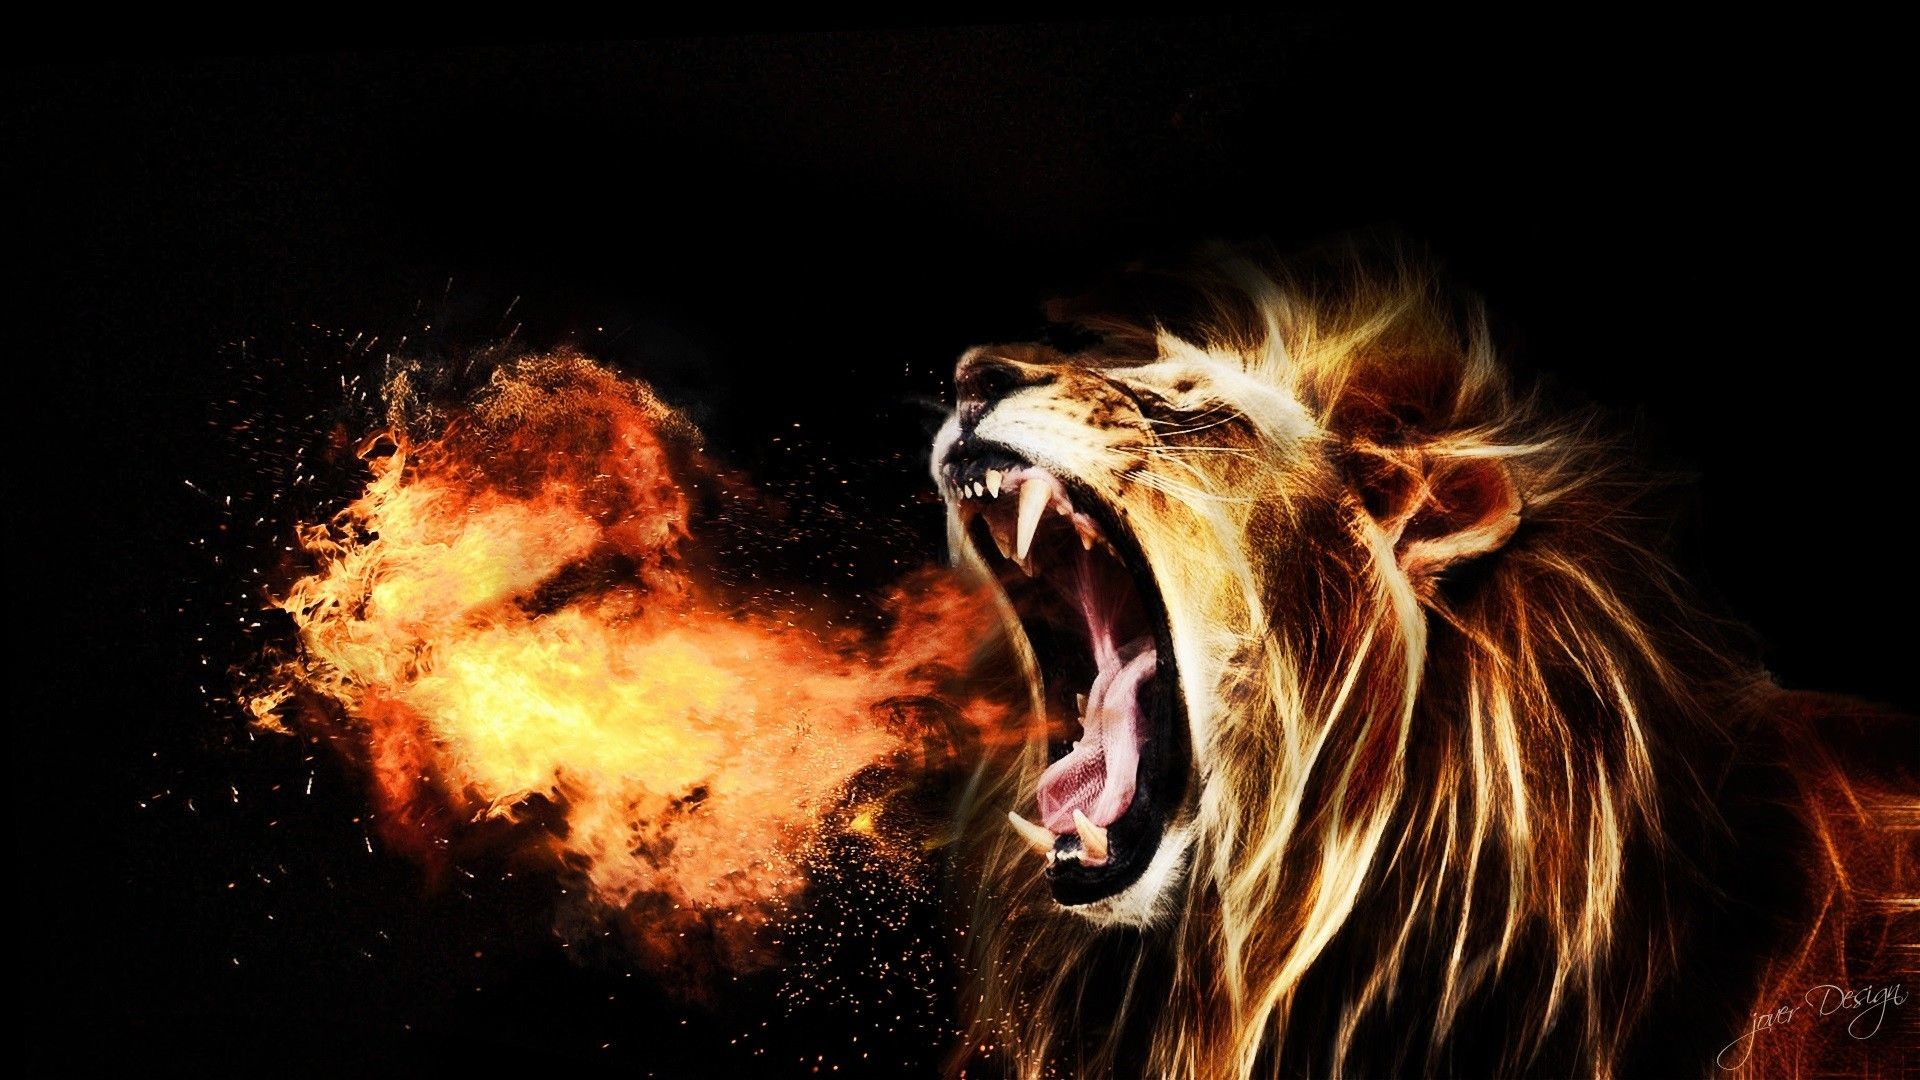 1920x1080, Lion Roar Free Download Hd Wallpapers - Lion Roaring Fire - 1920x1080  Wallpaper 